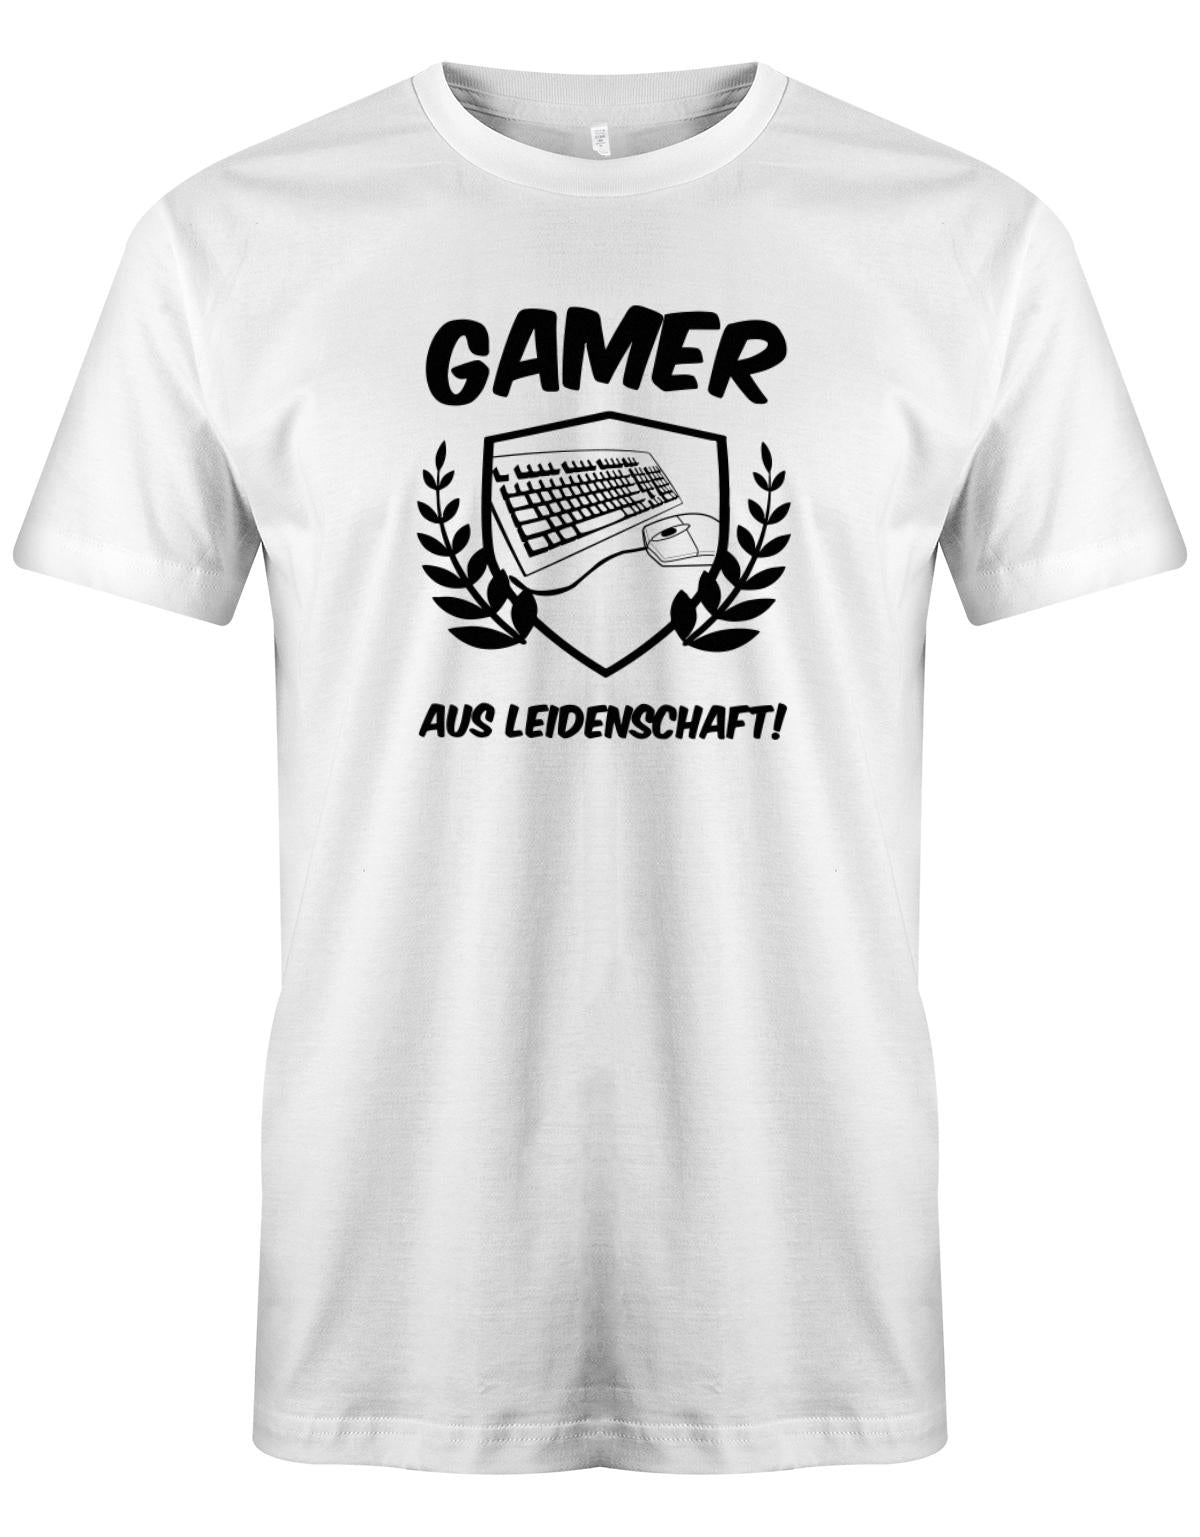 Gamer-Aus-leidenschaft-Herren-Gamer-Shirt-Weiss